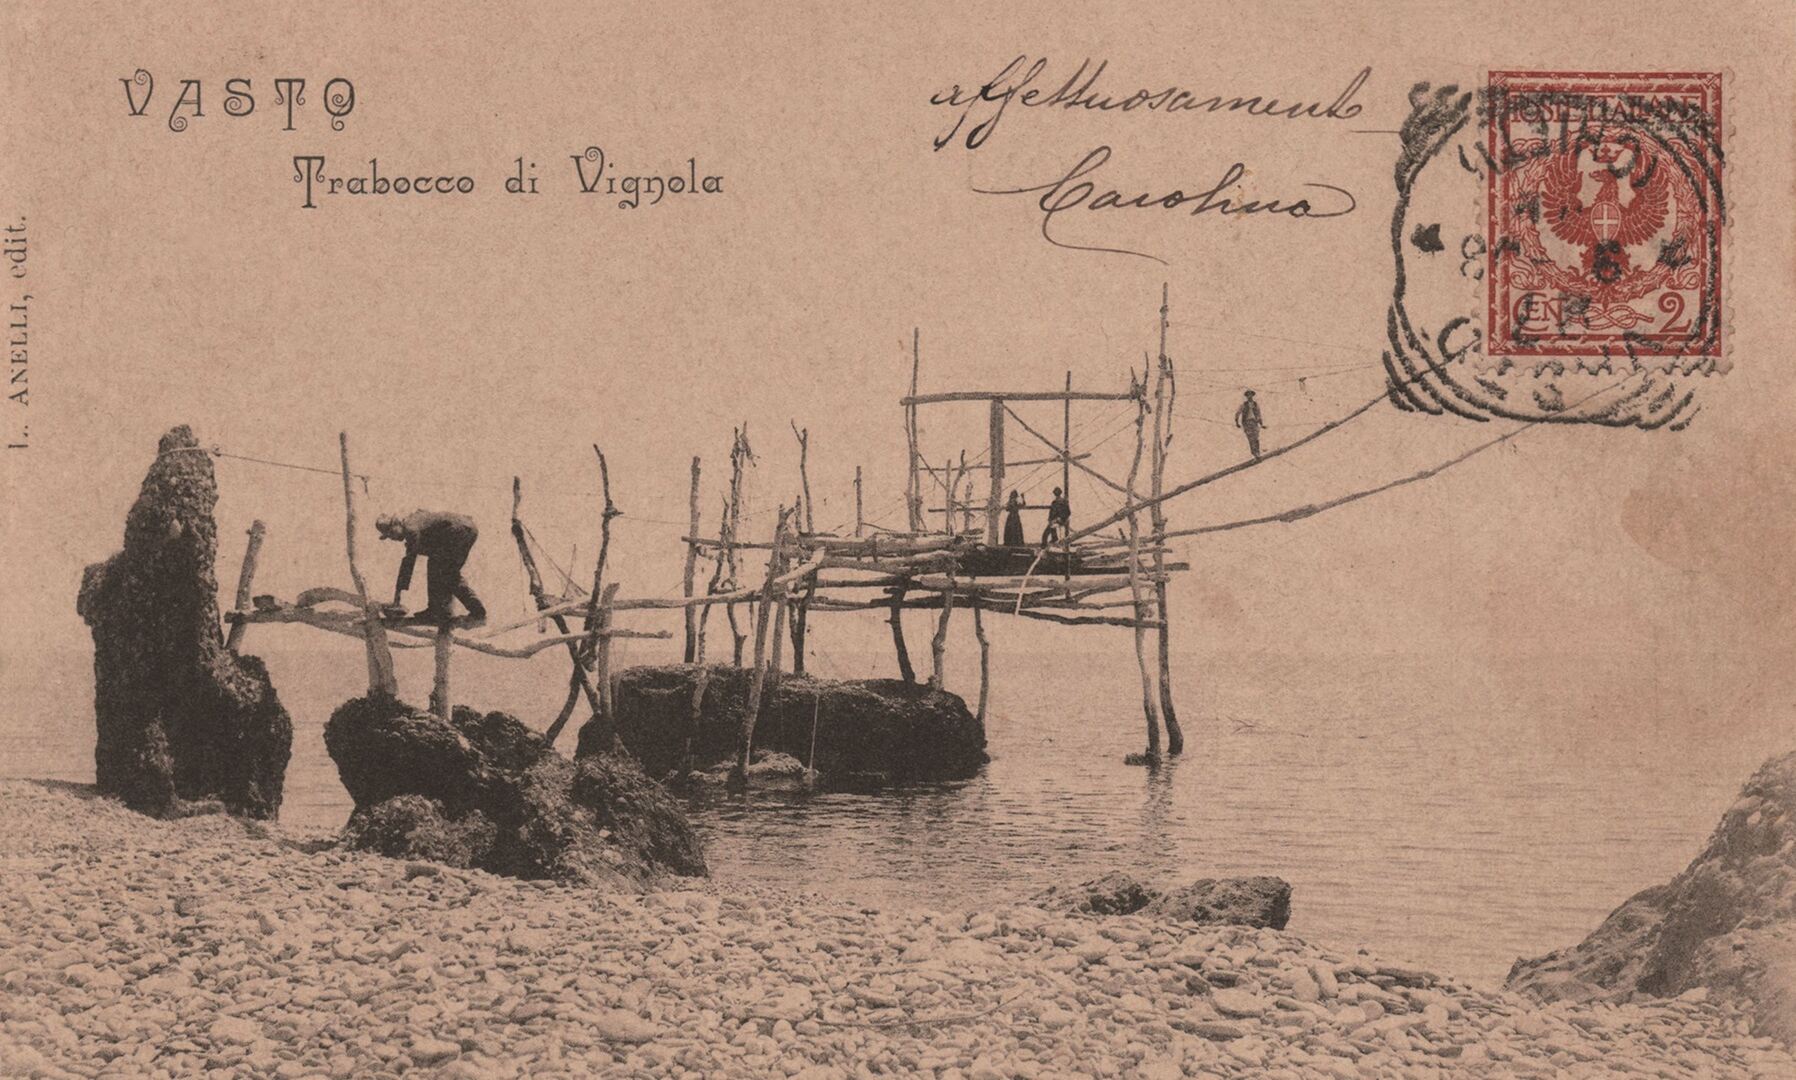 Trabocco di Vignola, Vasto (CH) in una cartolina dei primi anni del ’900. Arch. CARSA Edizioni